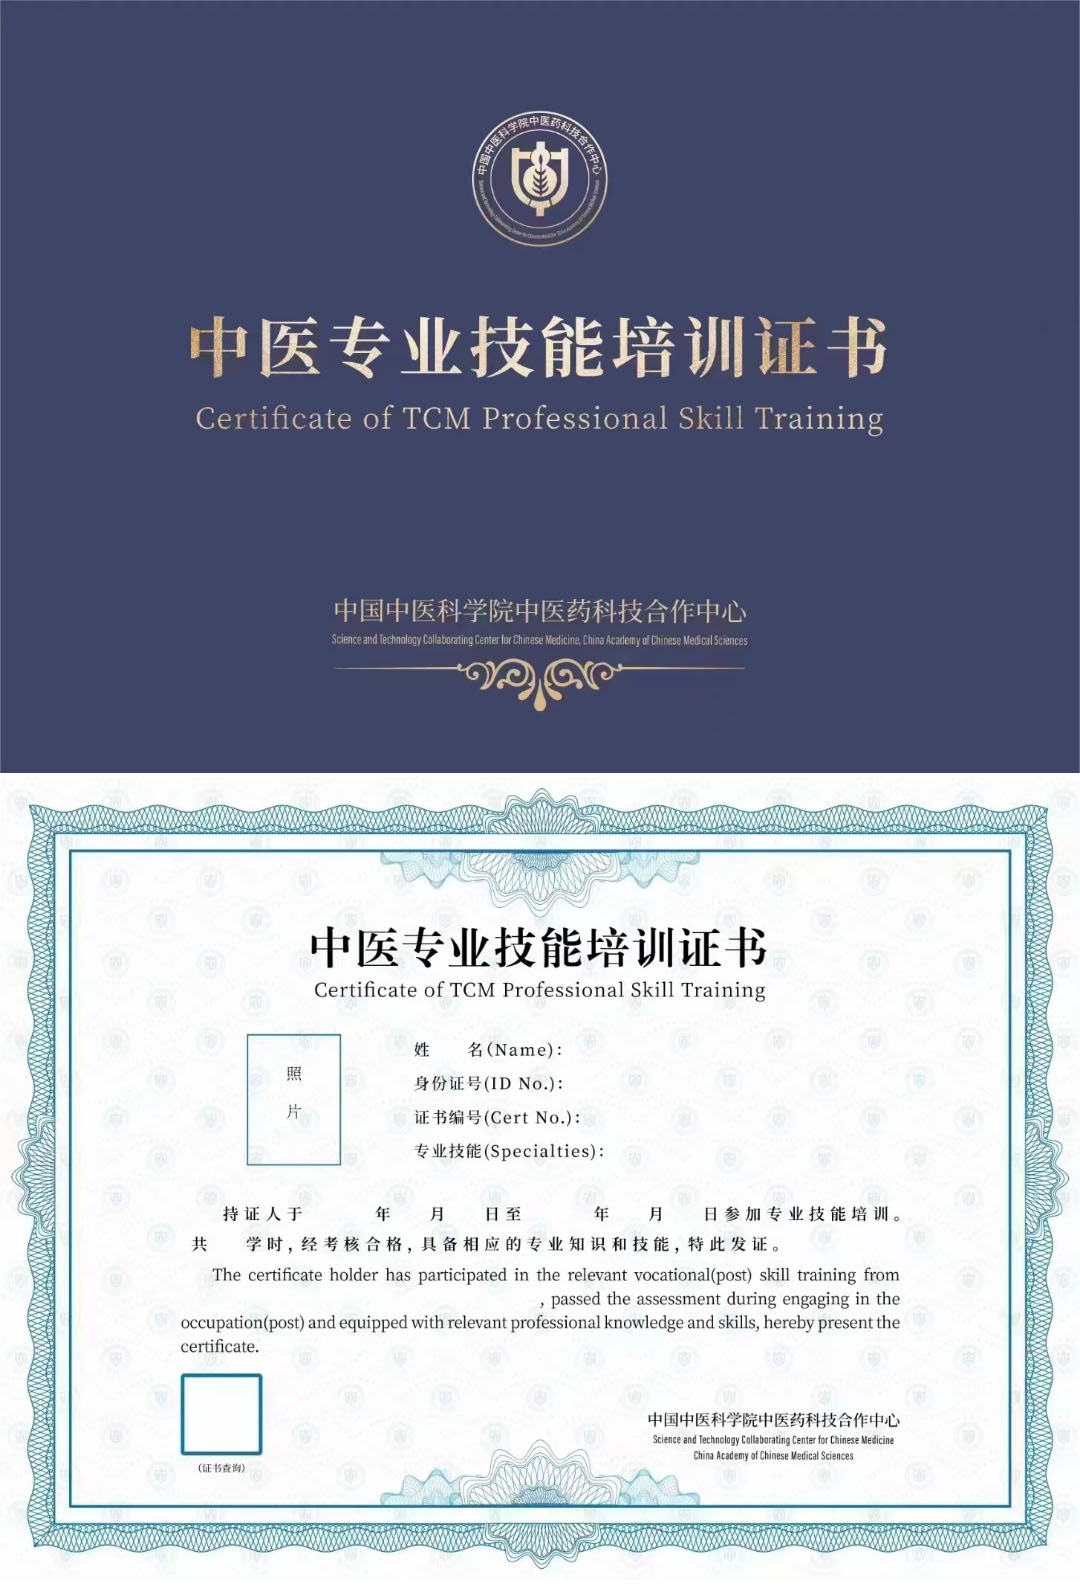 中国中医科学院中医药科技合作中心 中医专业技术培训证书 中医特色生殖理疗师证证书样本